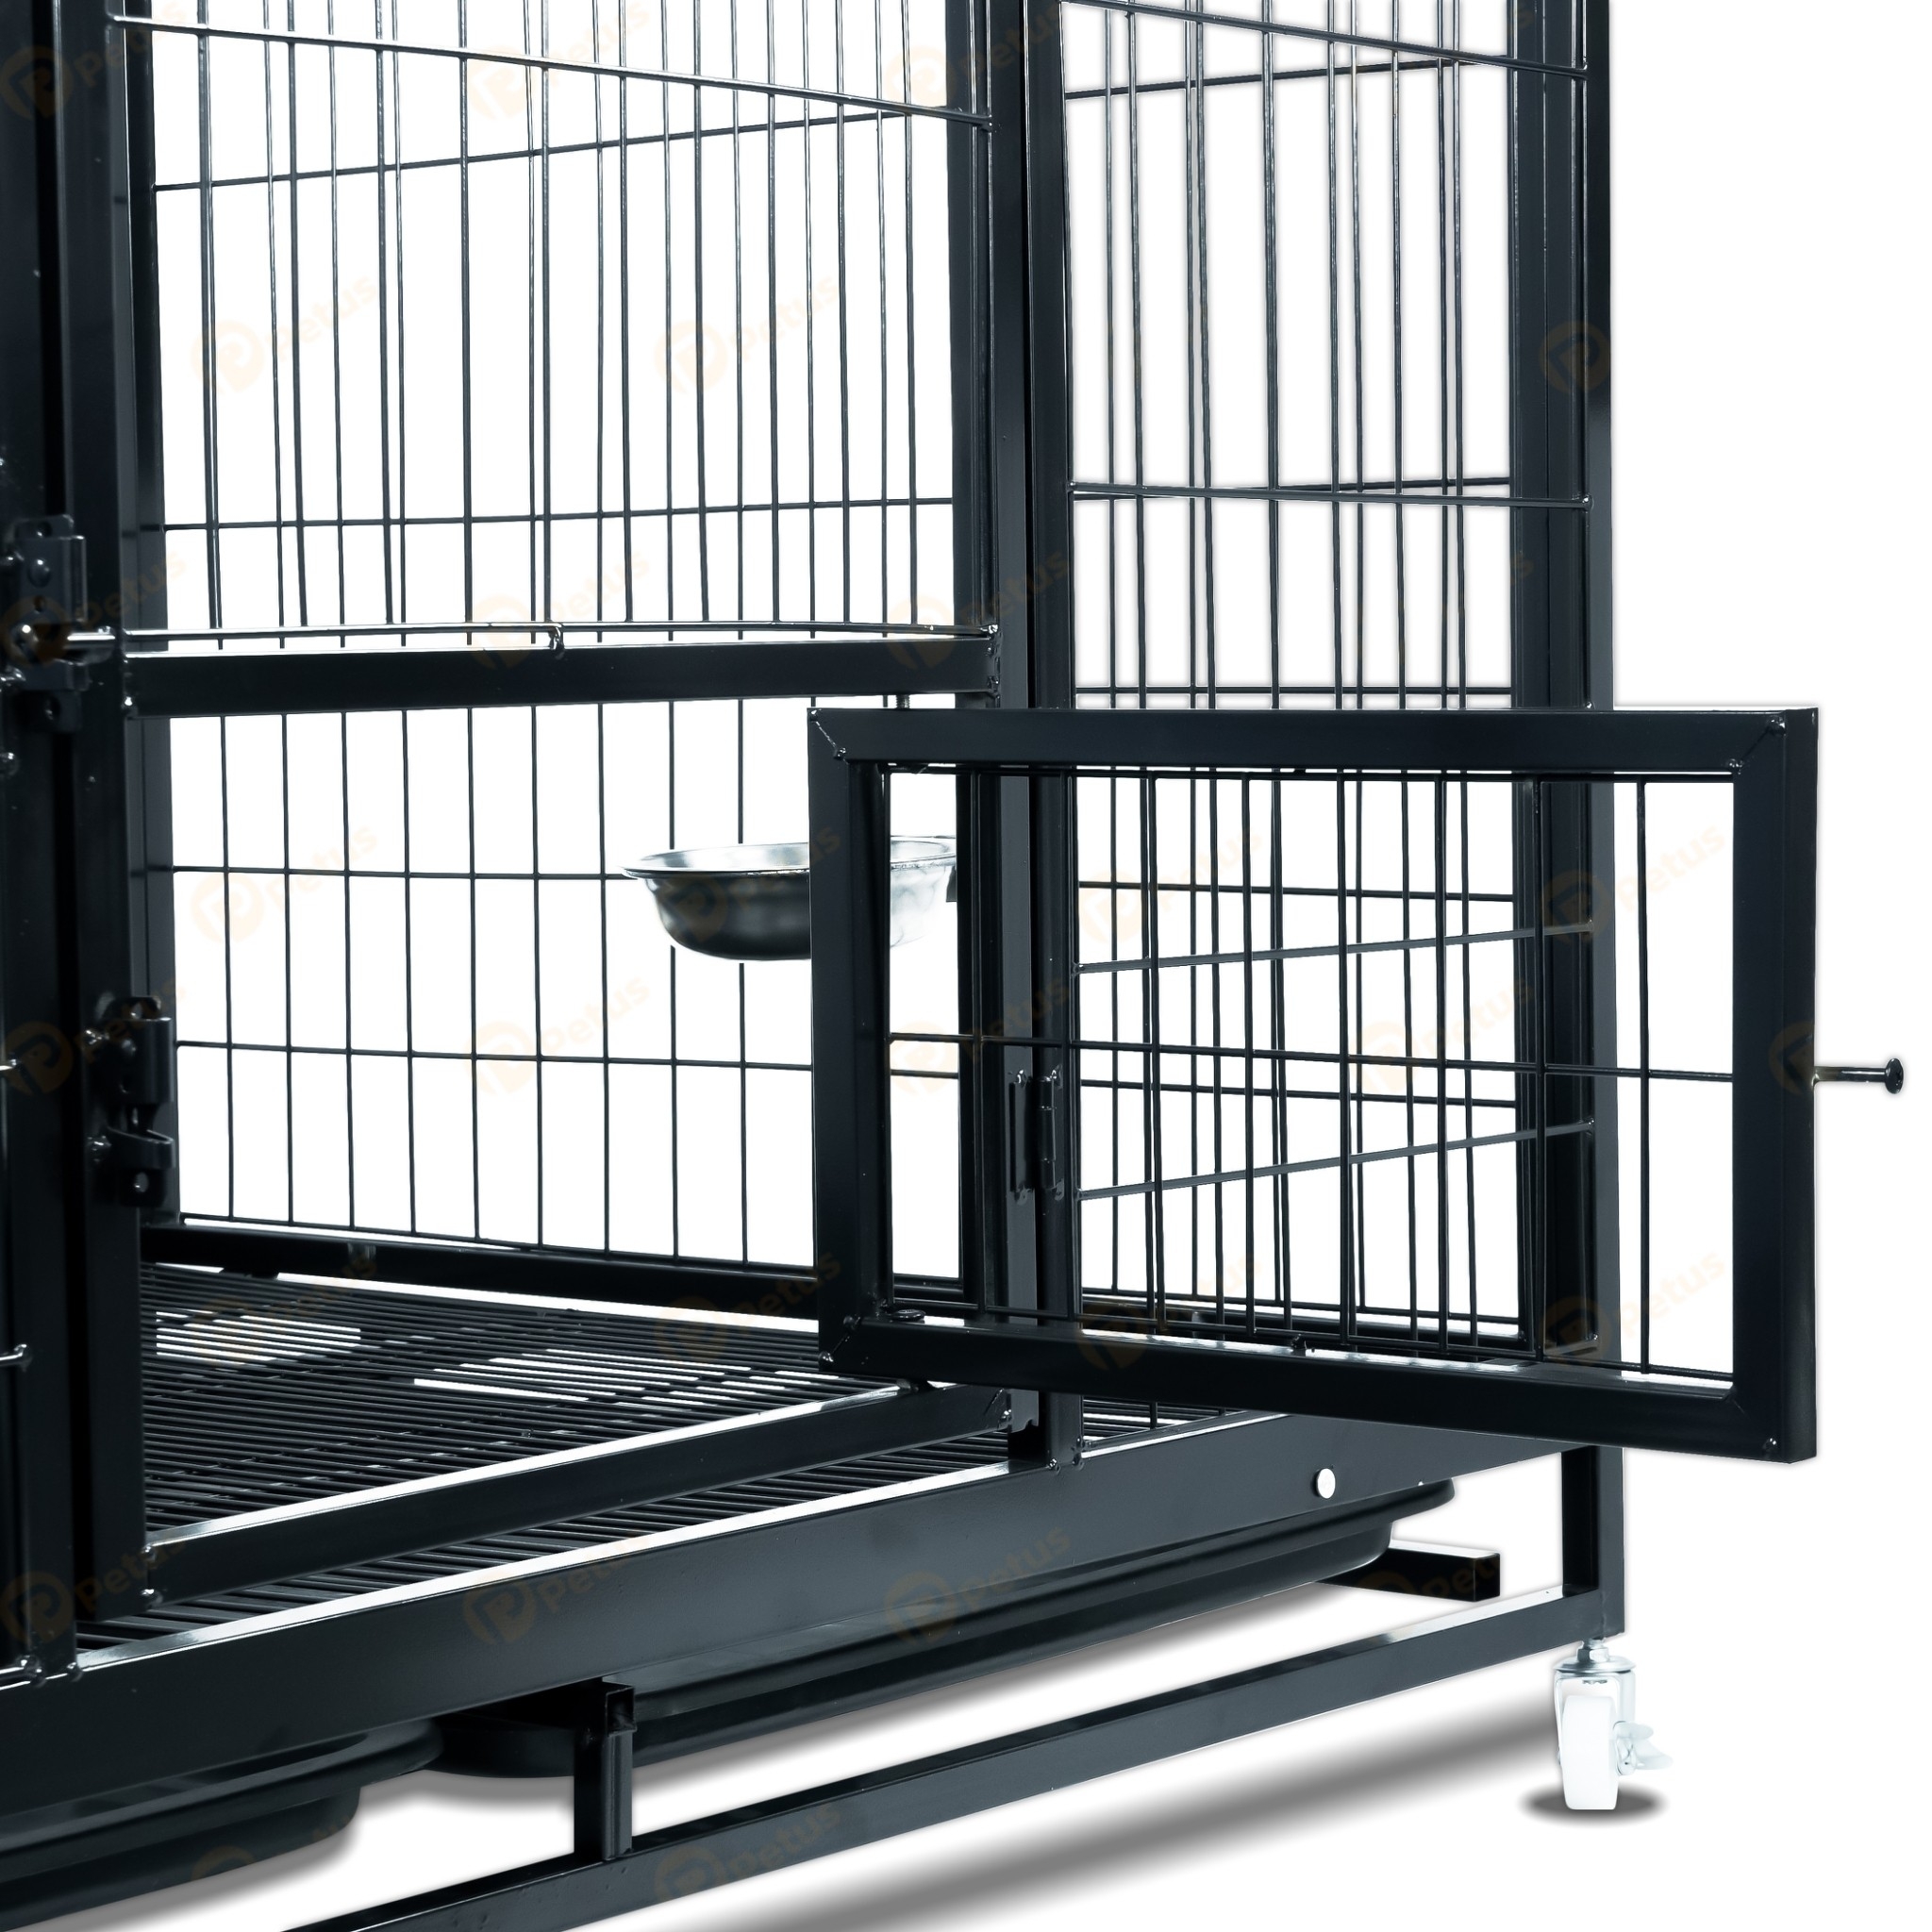 petus-dog-cage-1250